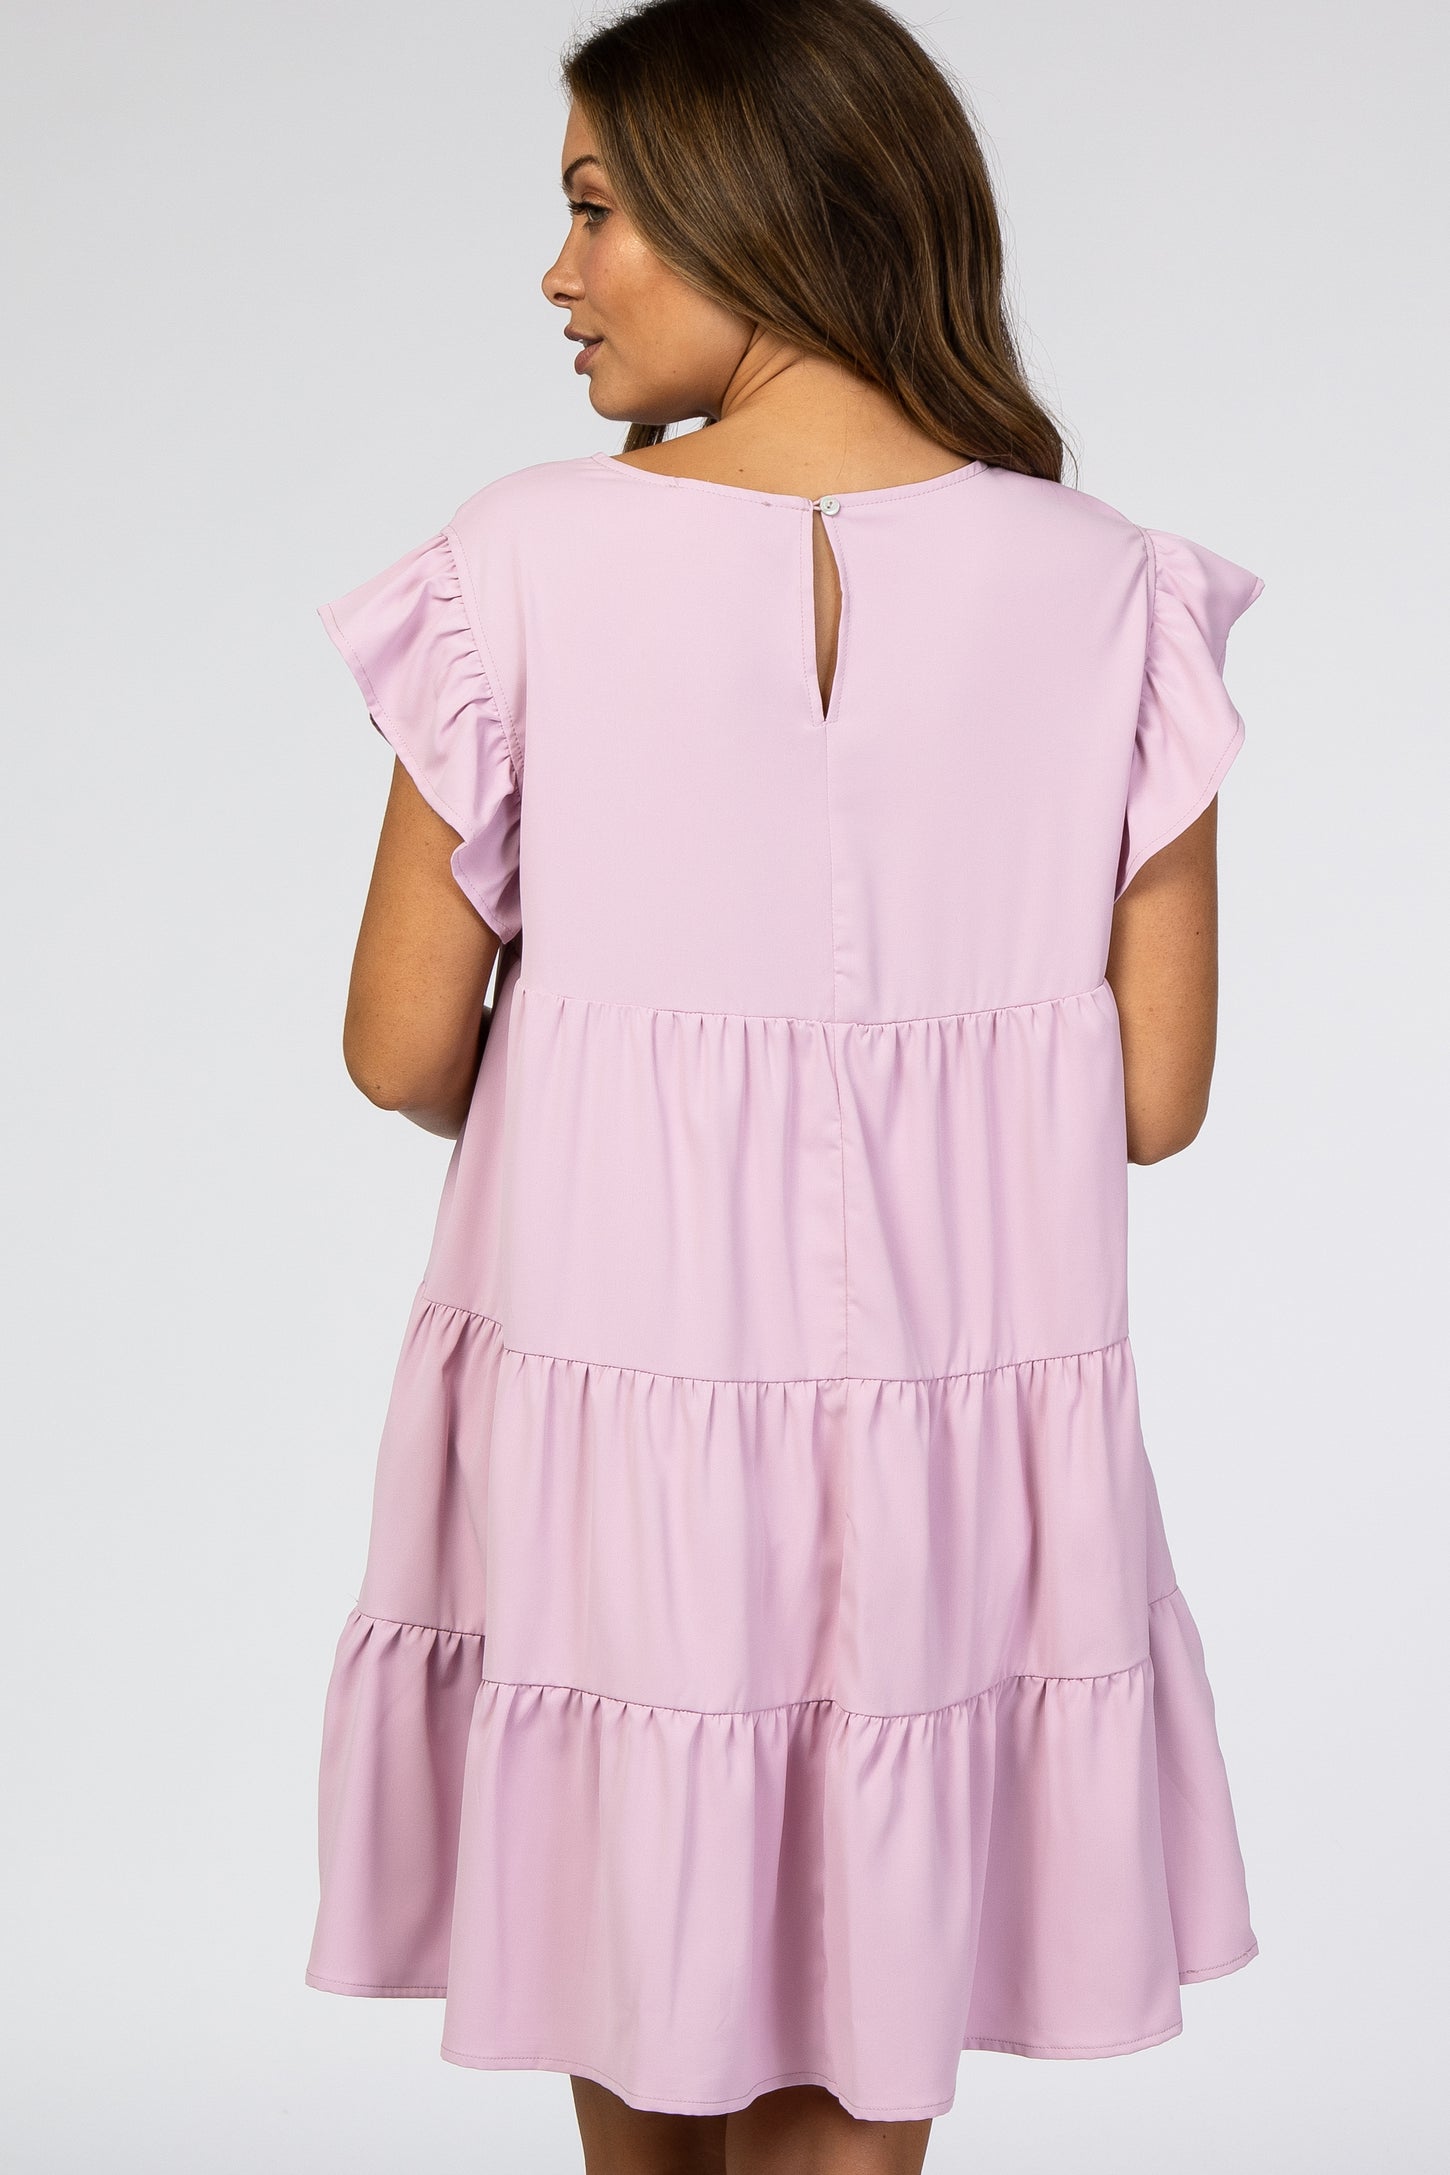 Light Pink Tiered Ruffle Maternity Dress